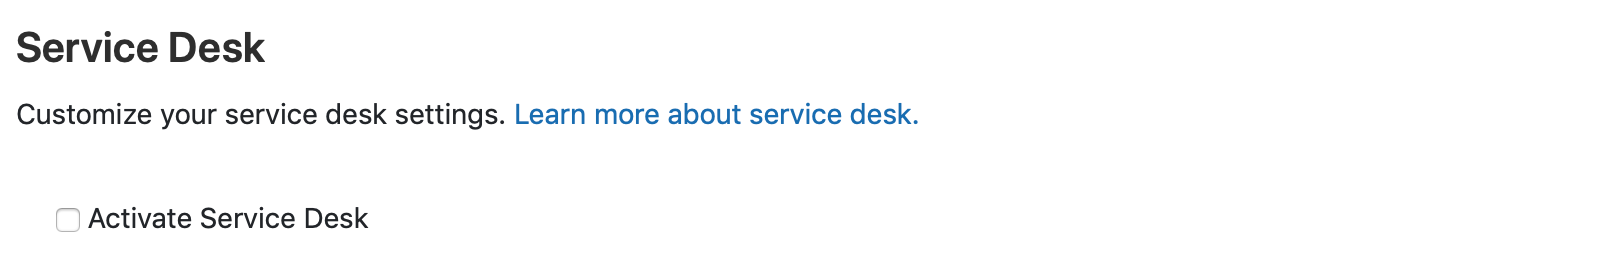 Activate Service Desk option